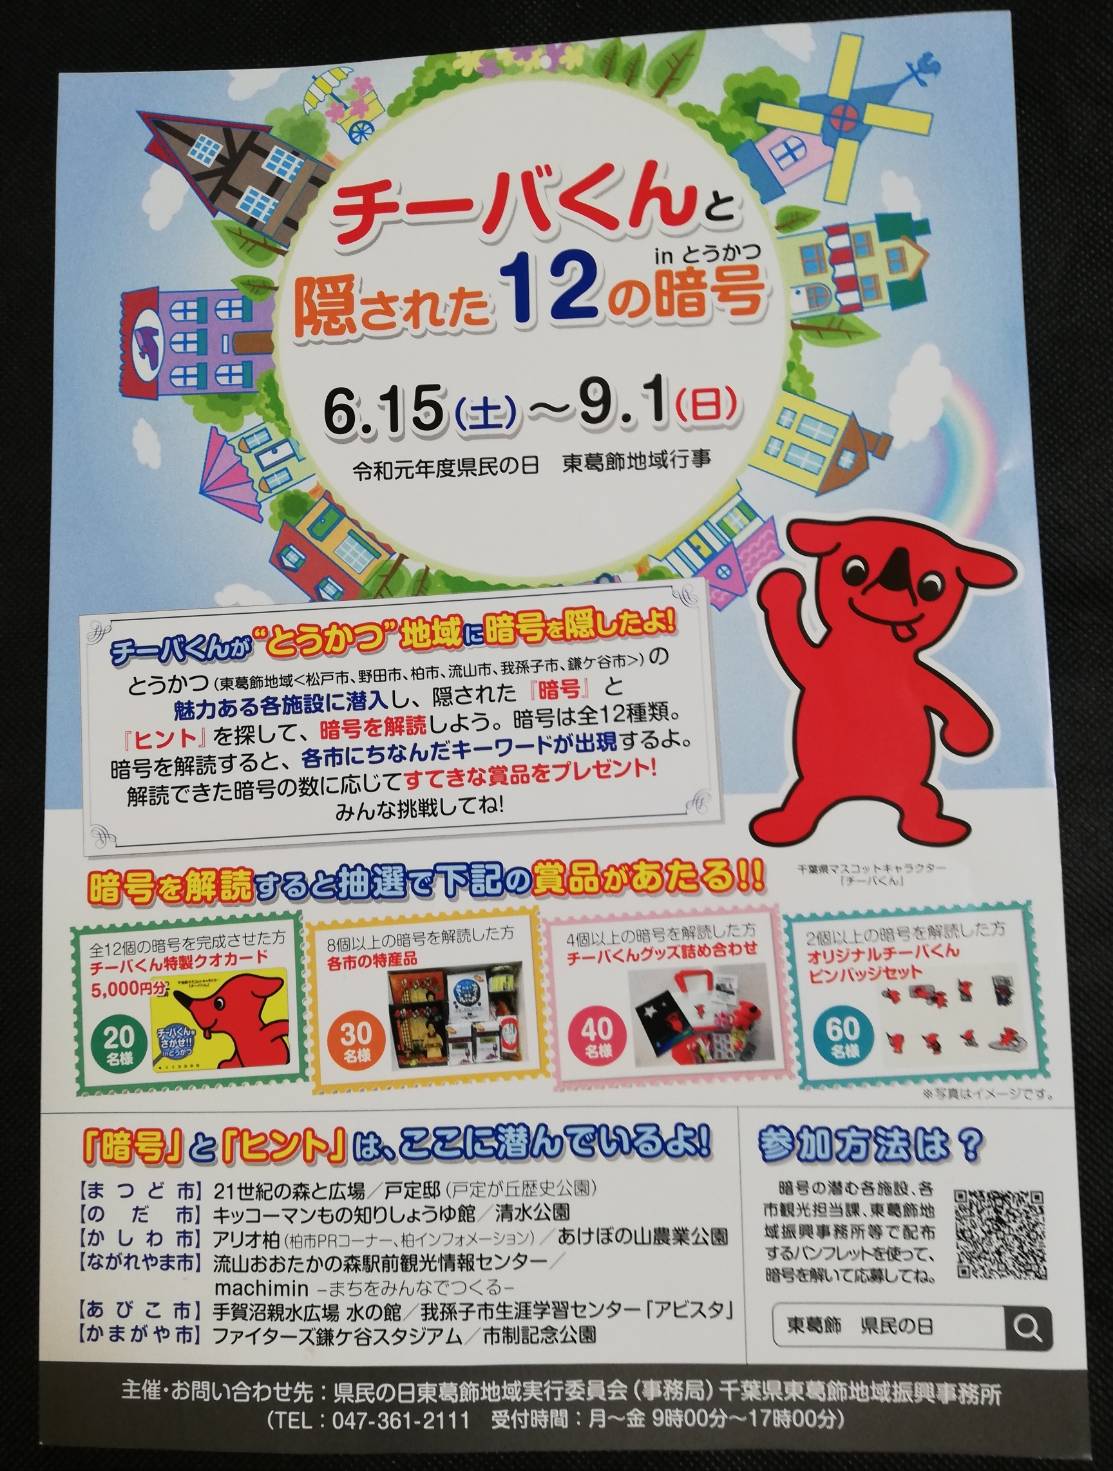 チーバくんと隠された12の暗号が開催 19年の夏休みイベントで楽しそう 松戸ロード 松戸の地域情報